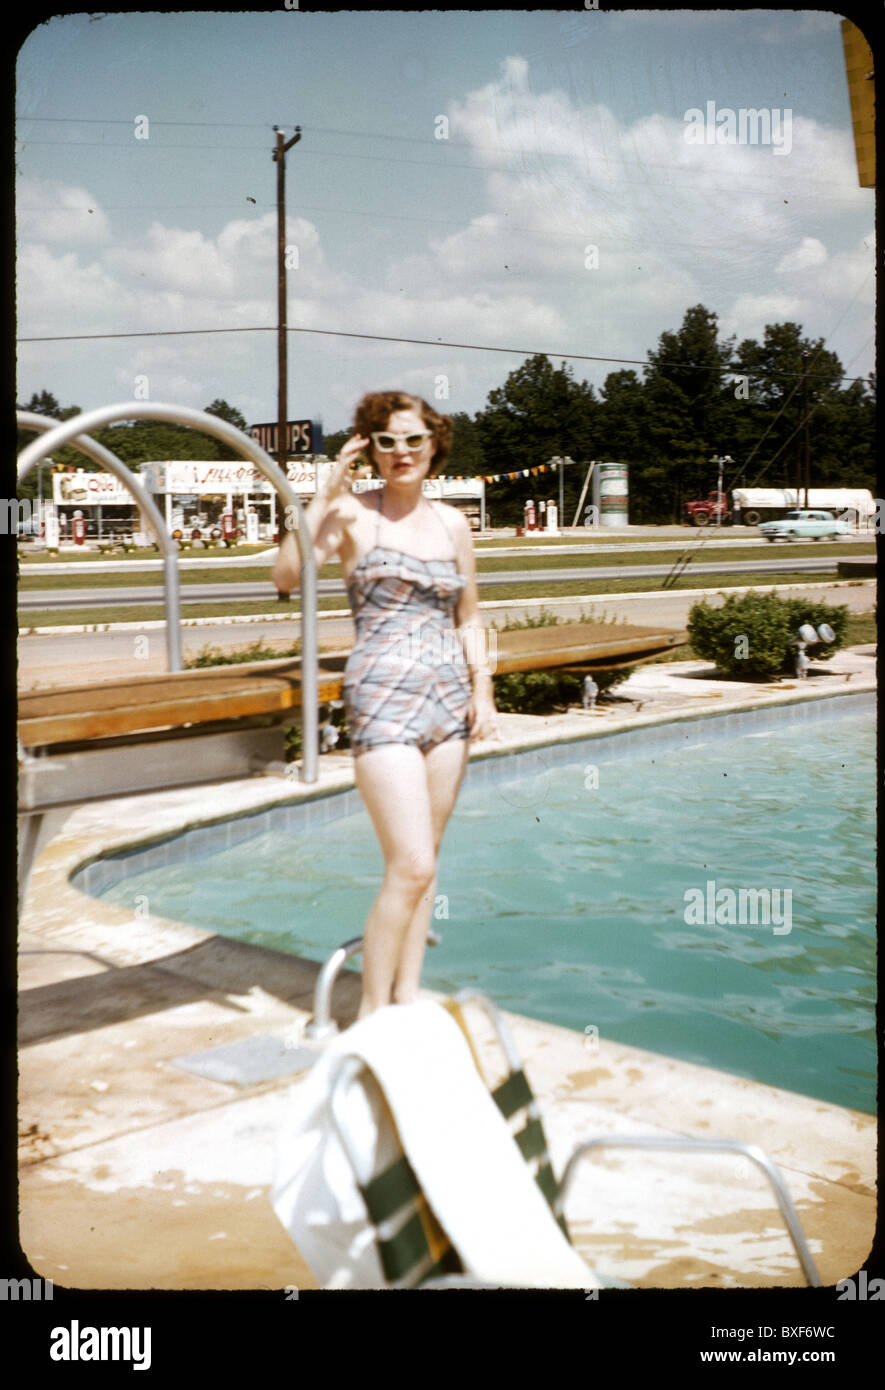 Modische Frau mit weißen Sonne Brille 1959 1950s stand neben Schwimmbad Motel Architektur posiert Tag vertikal Stockfoto